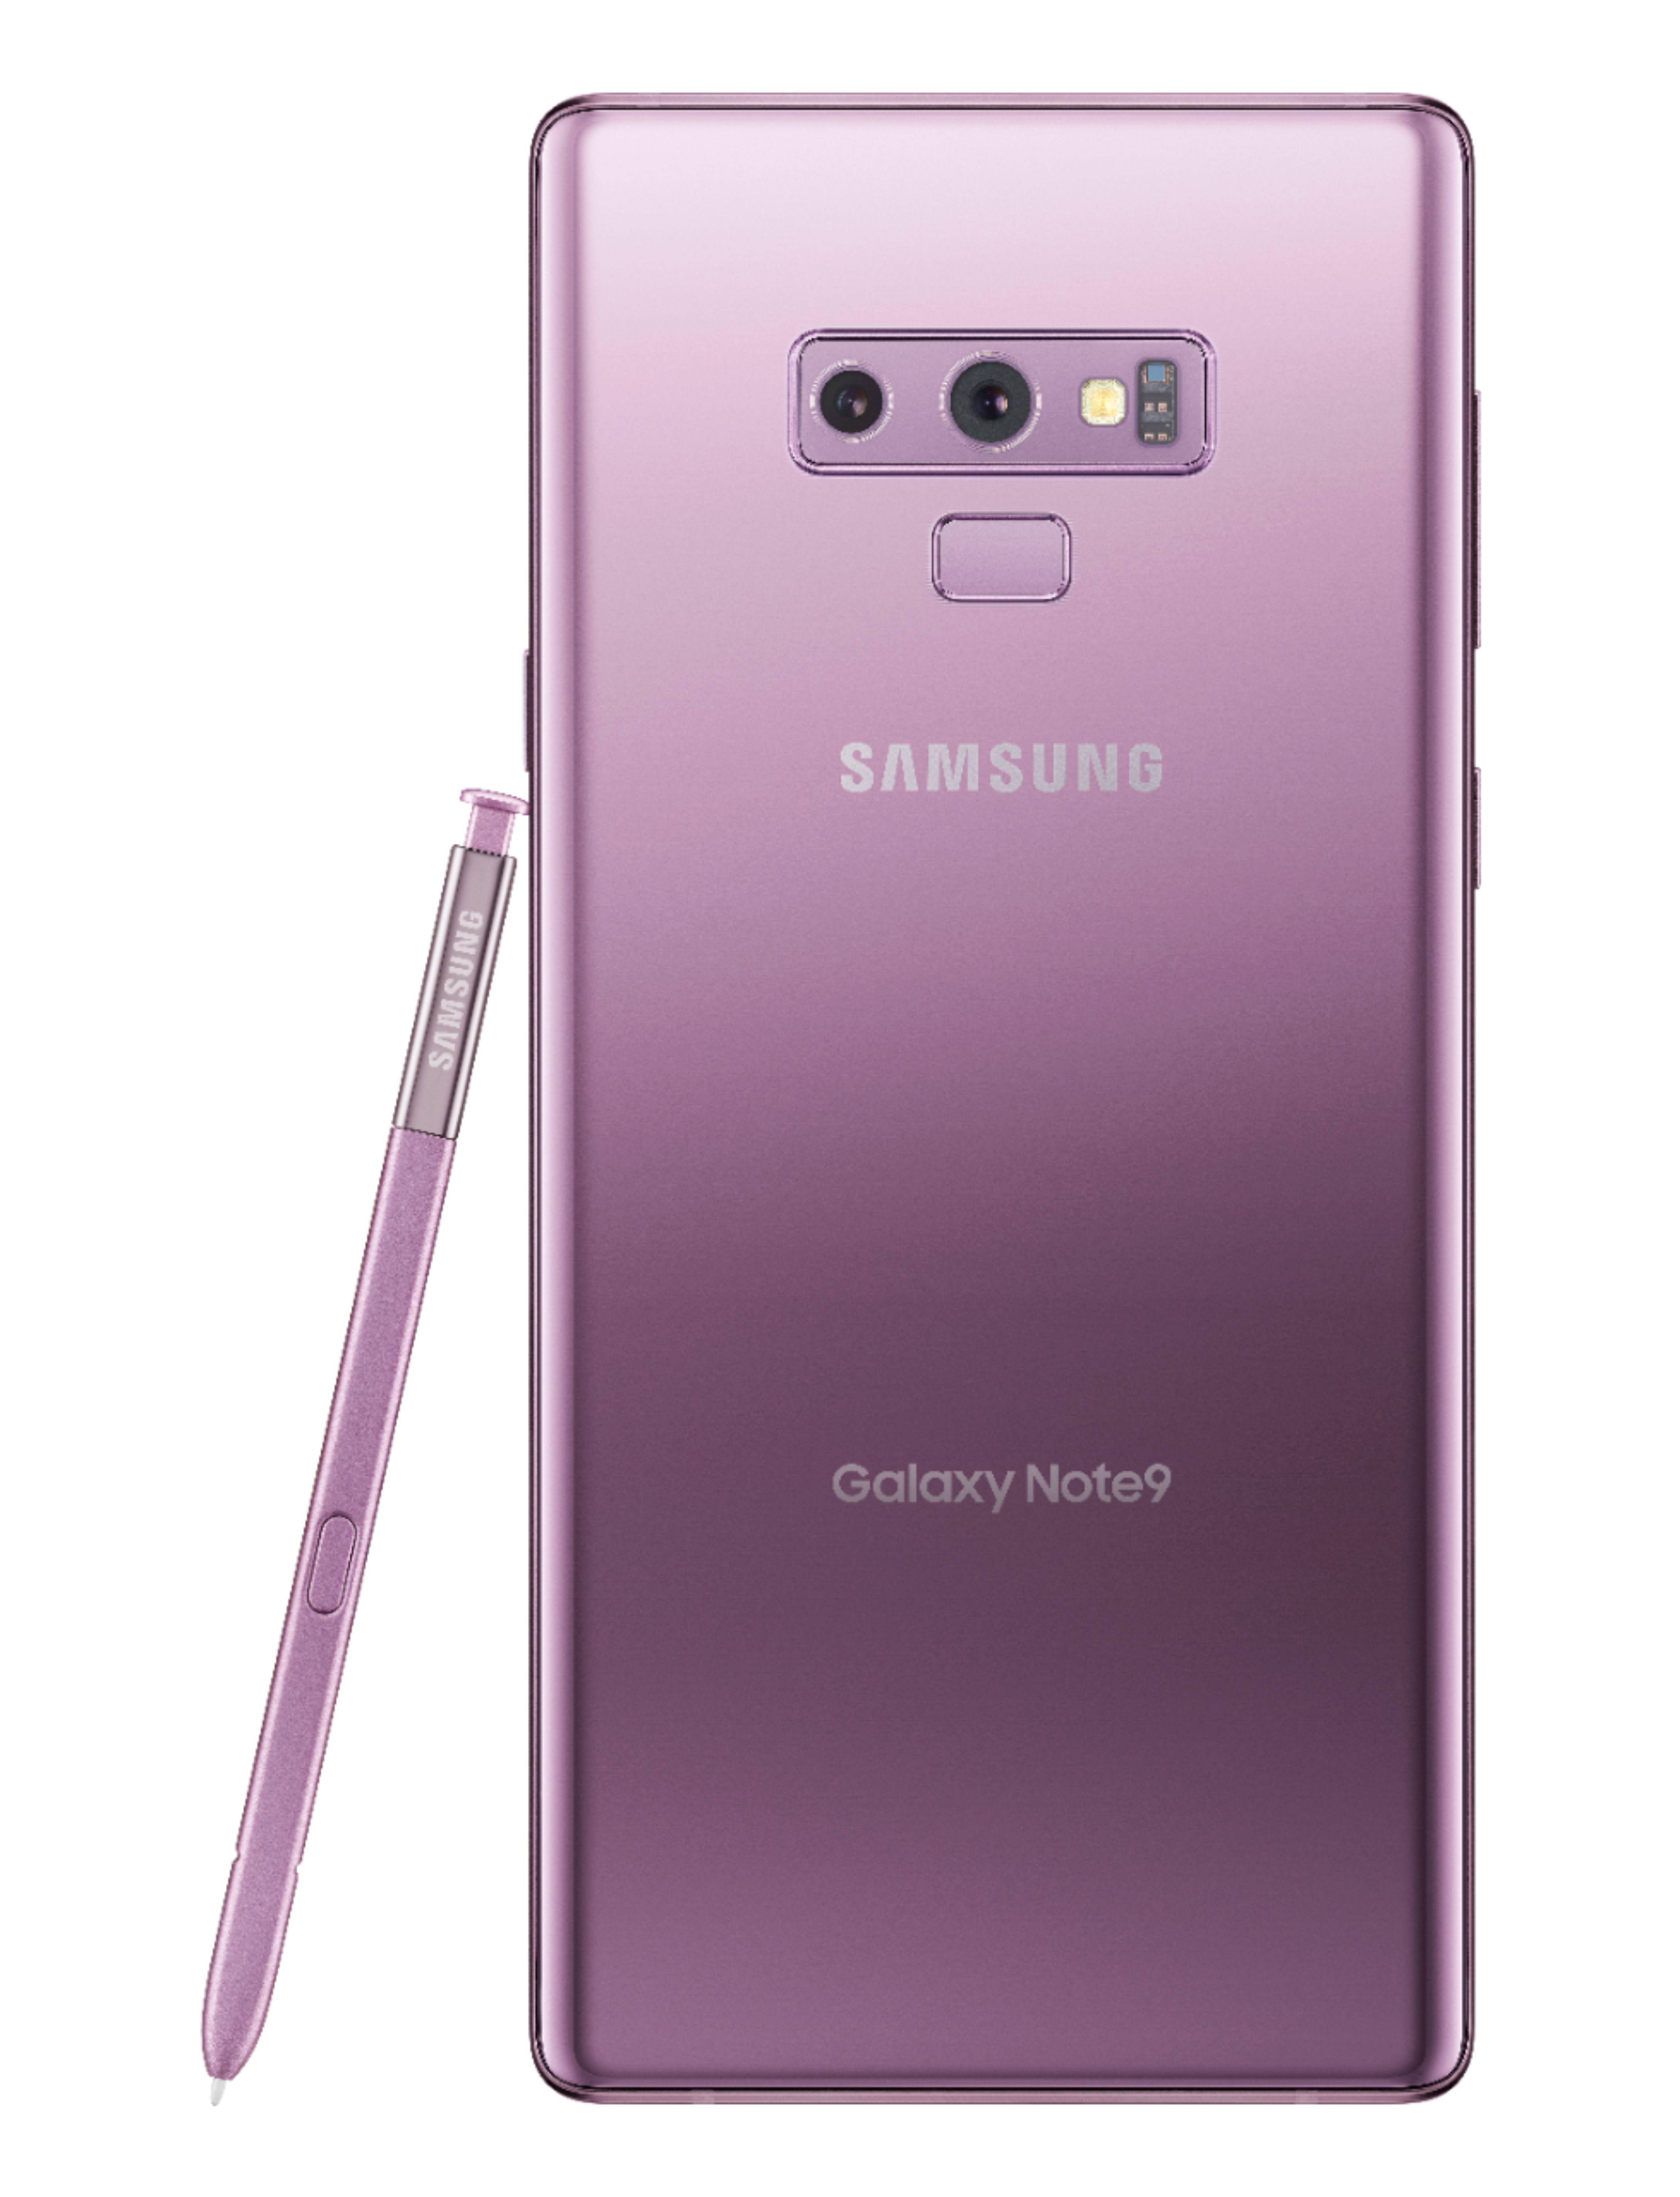 sucesor visa Perspicaz Best Buy: Samsung Galaxy Note9 128GB Lavender Purple (Verizon) SMN960UZPV